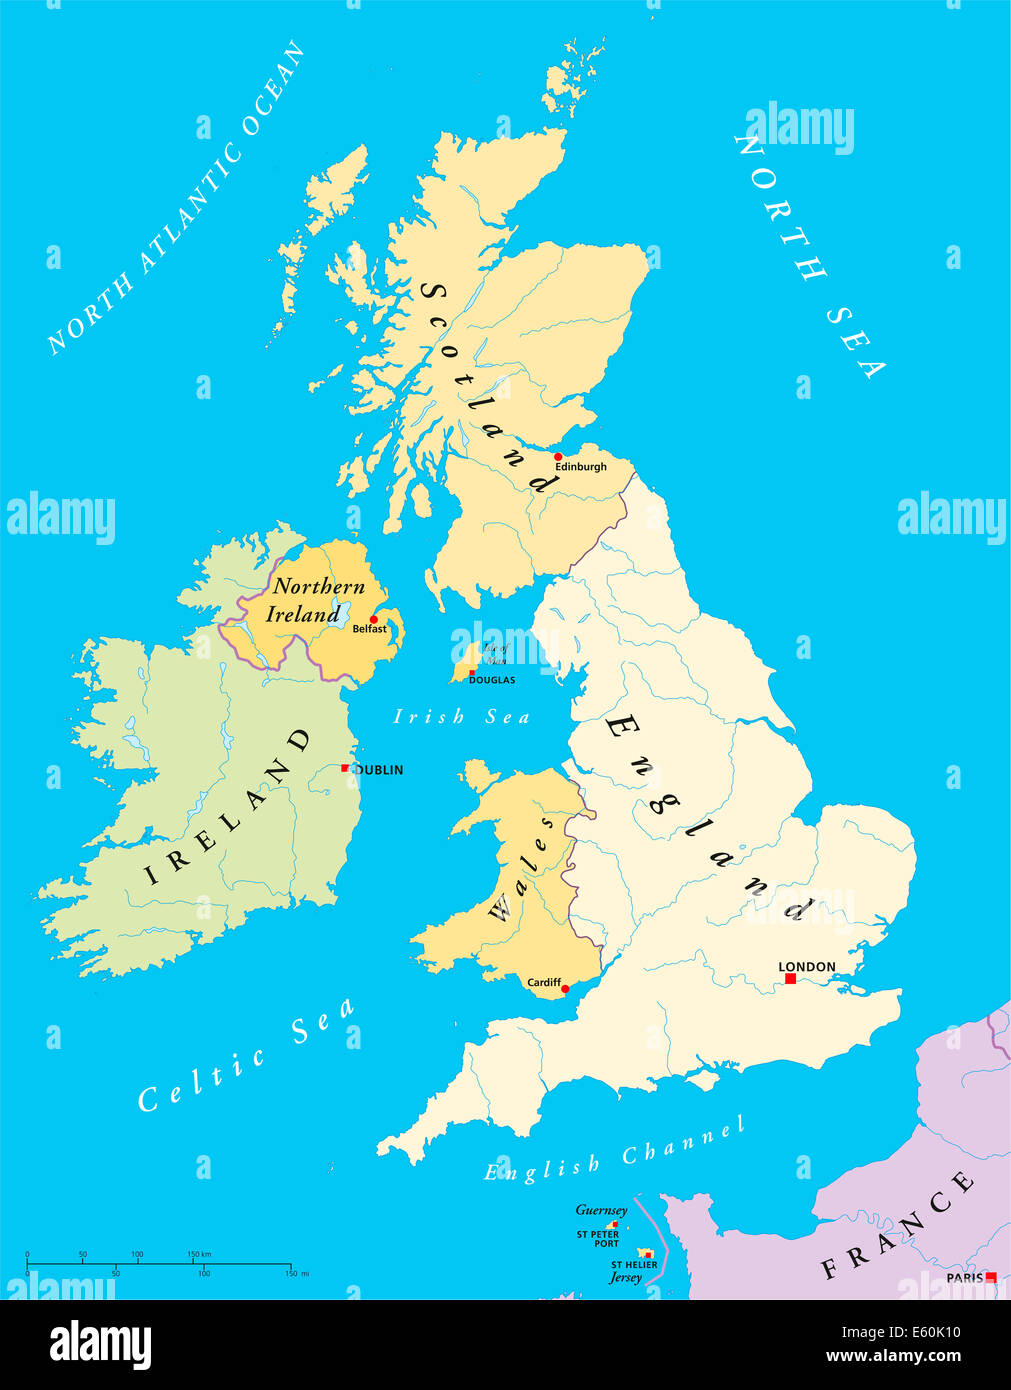 Isole britanniche Mappa - Isole Britanniche Mappa con capitelli, i confini nazionali, fiumi e laghi. Illustrazione con etichetta inglese. Foto Stock